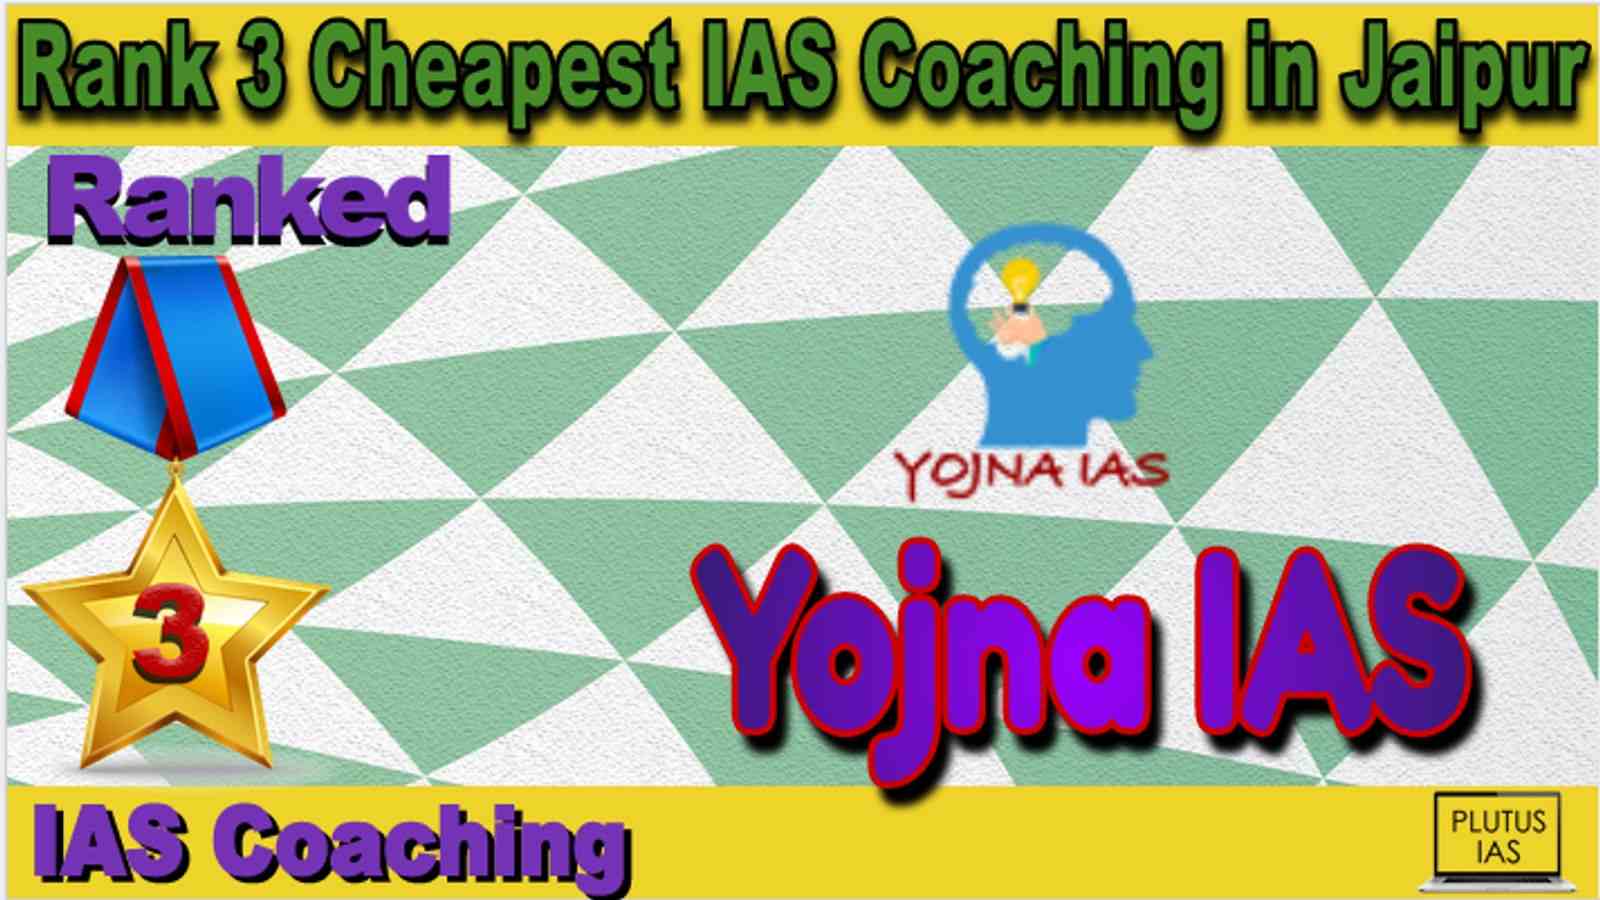 Rank 3 Cheapest IAS Coaching in Jaipur